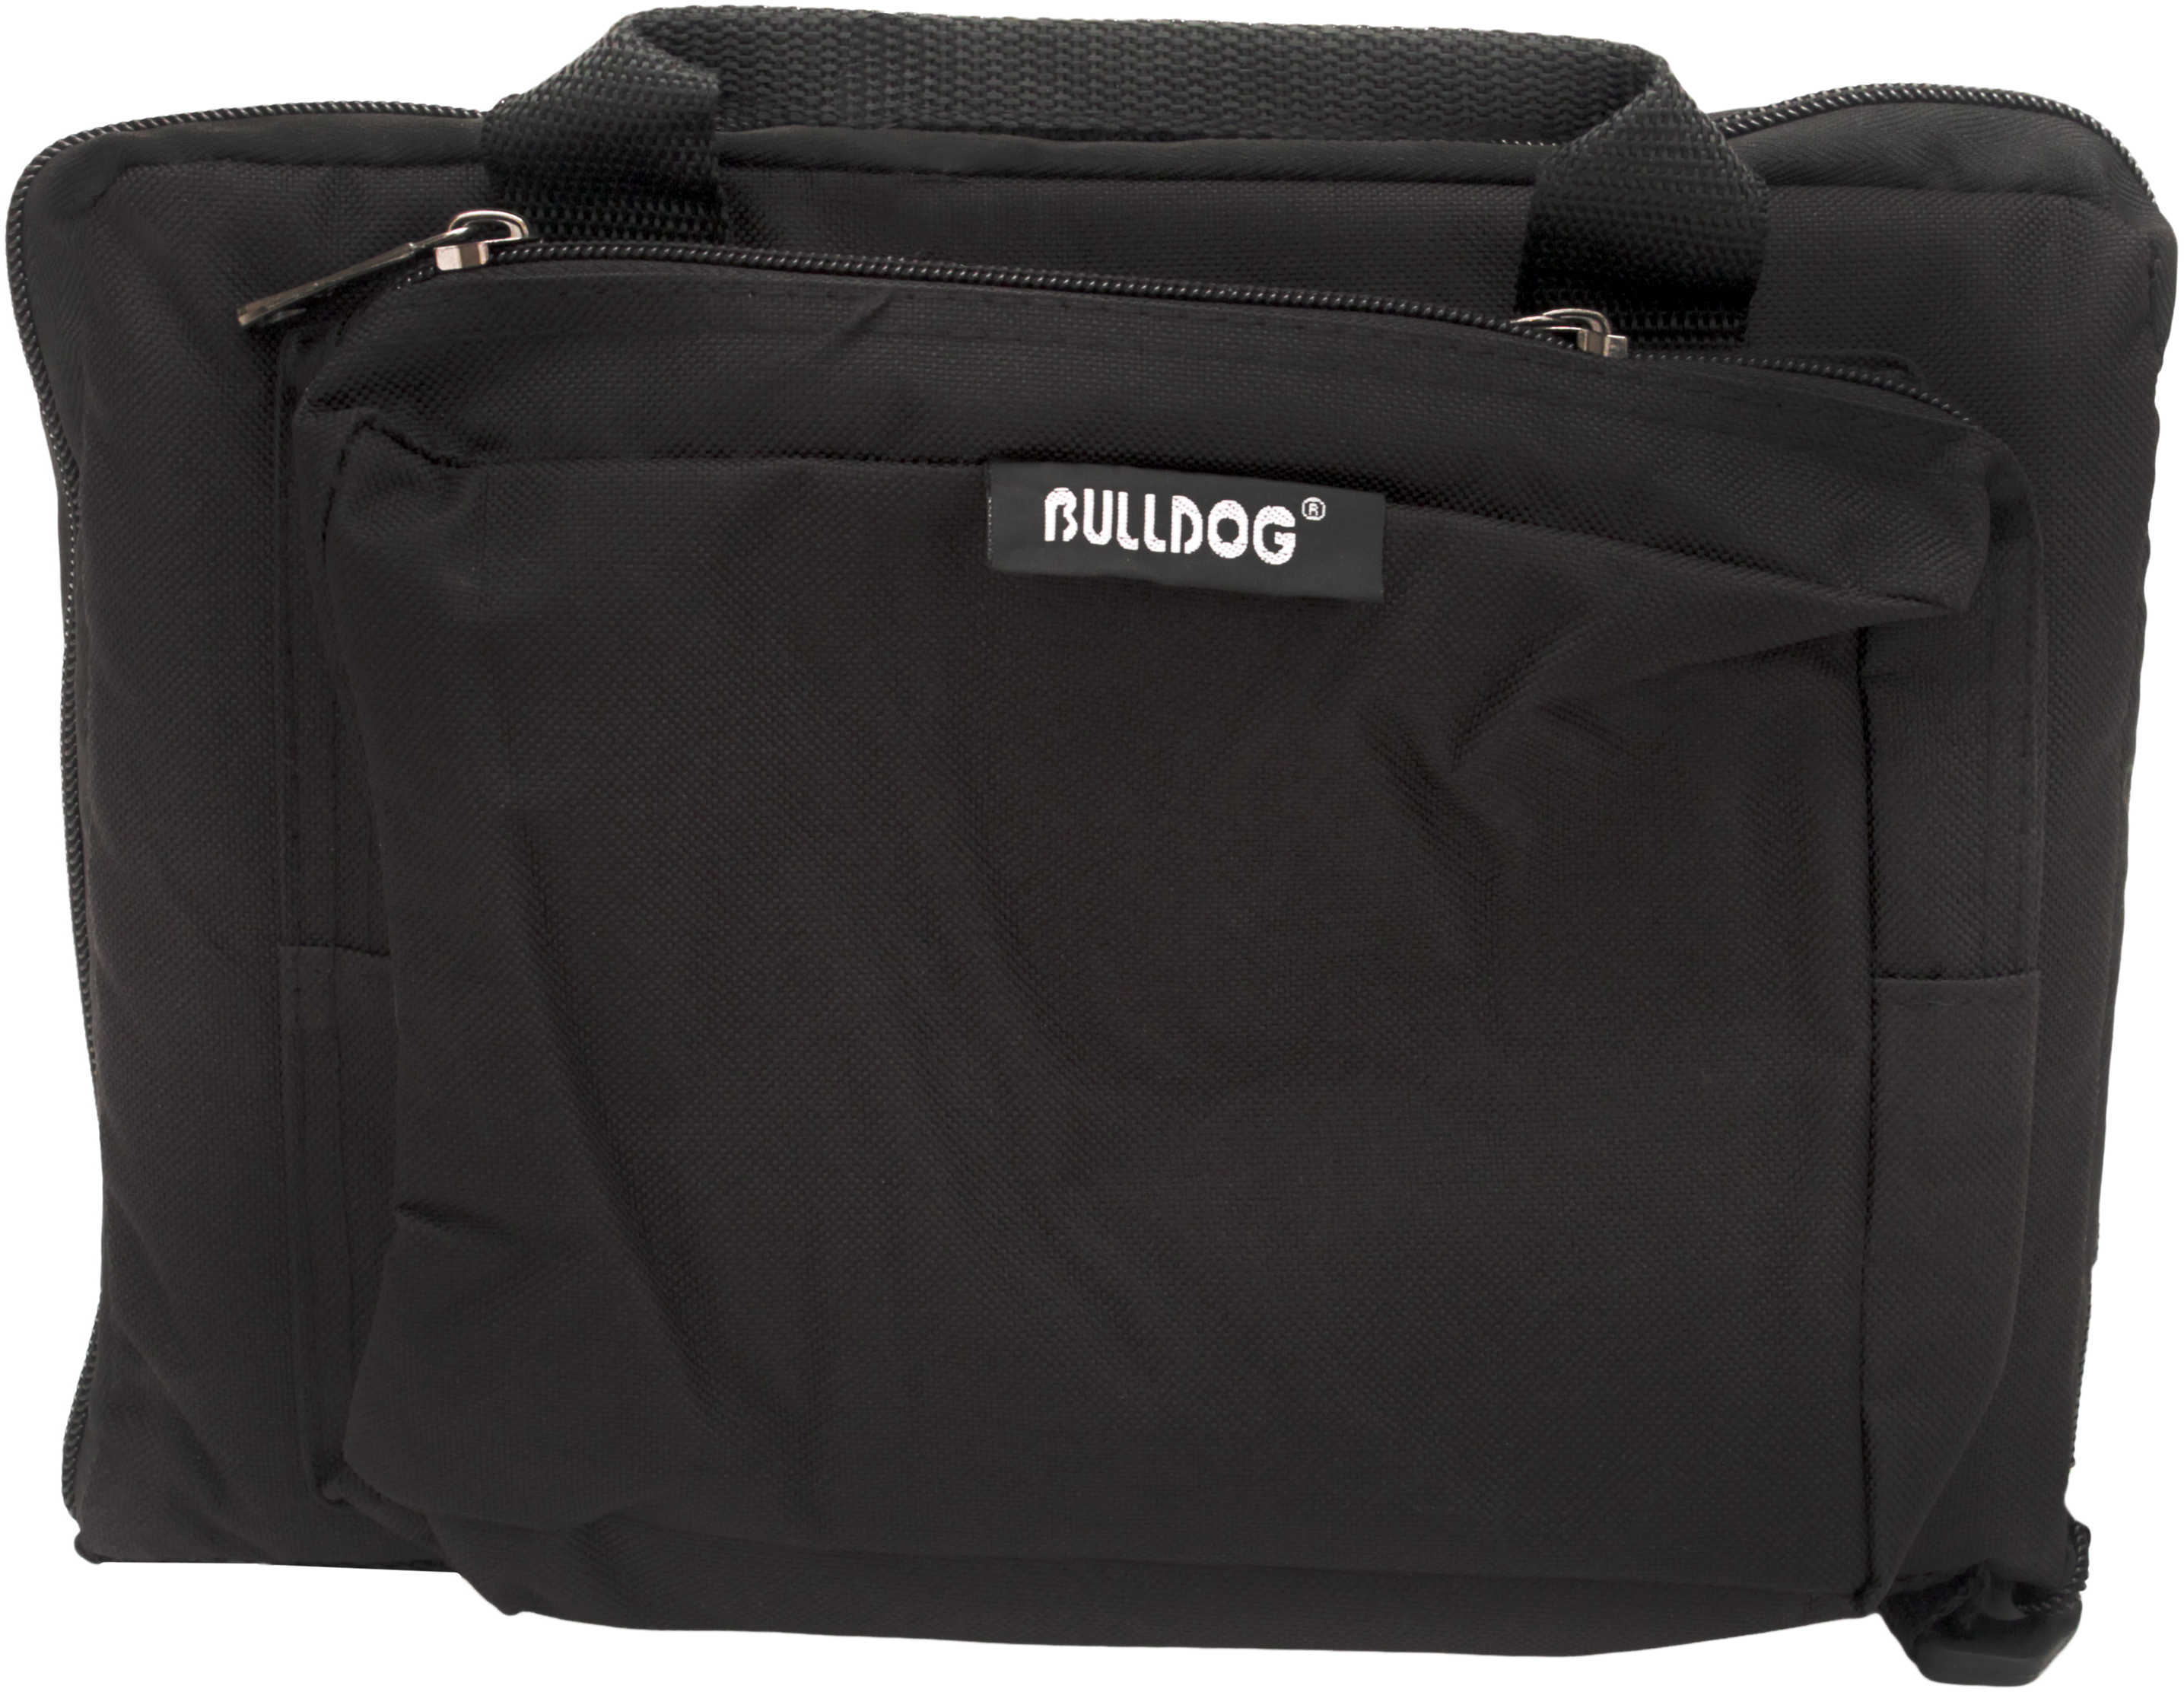 Bulldog Deluxe Range Bag Black Mini Model: BD915